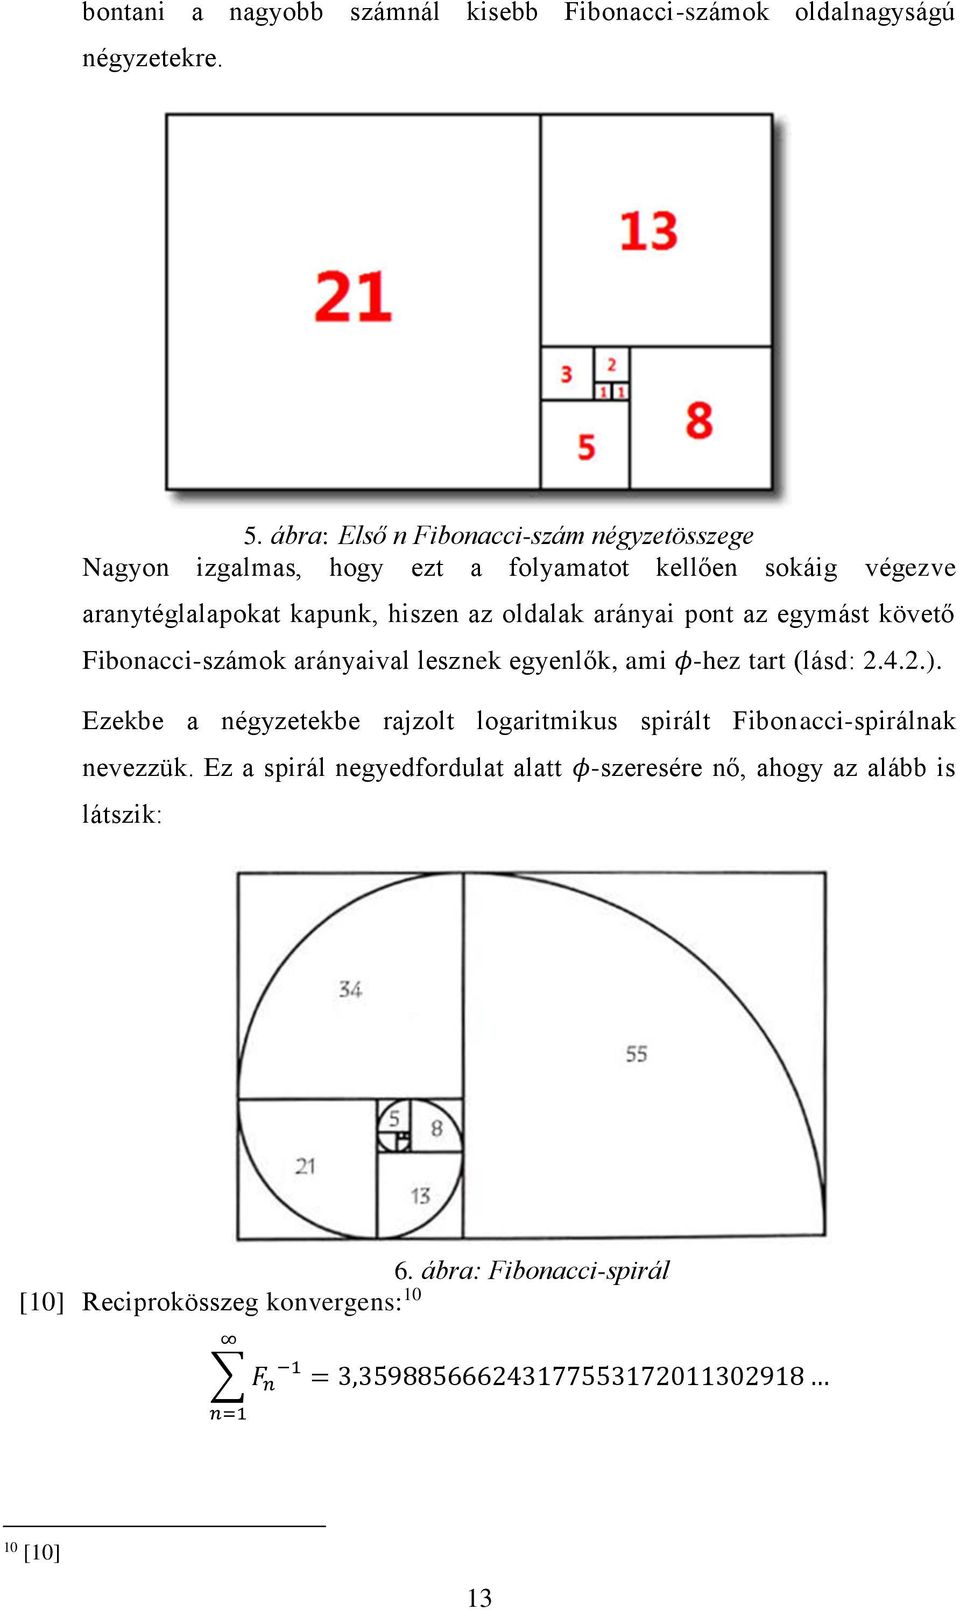 fibonacci kiterjesztések és javítások)